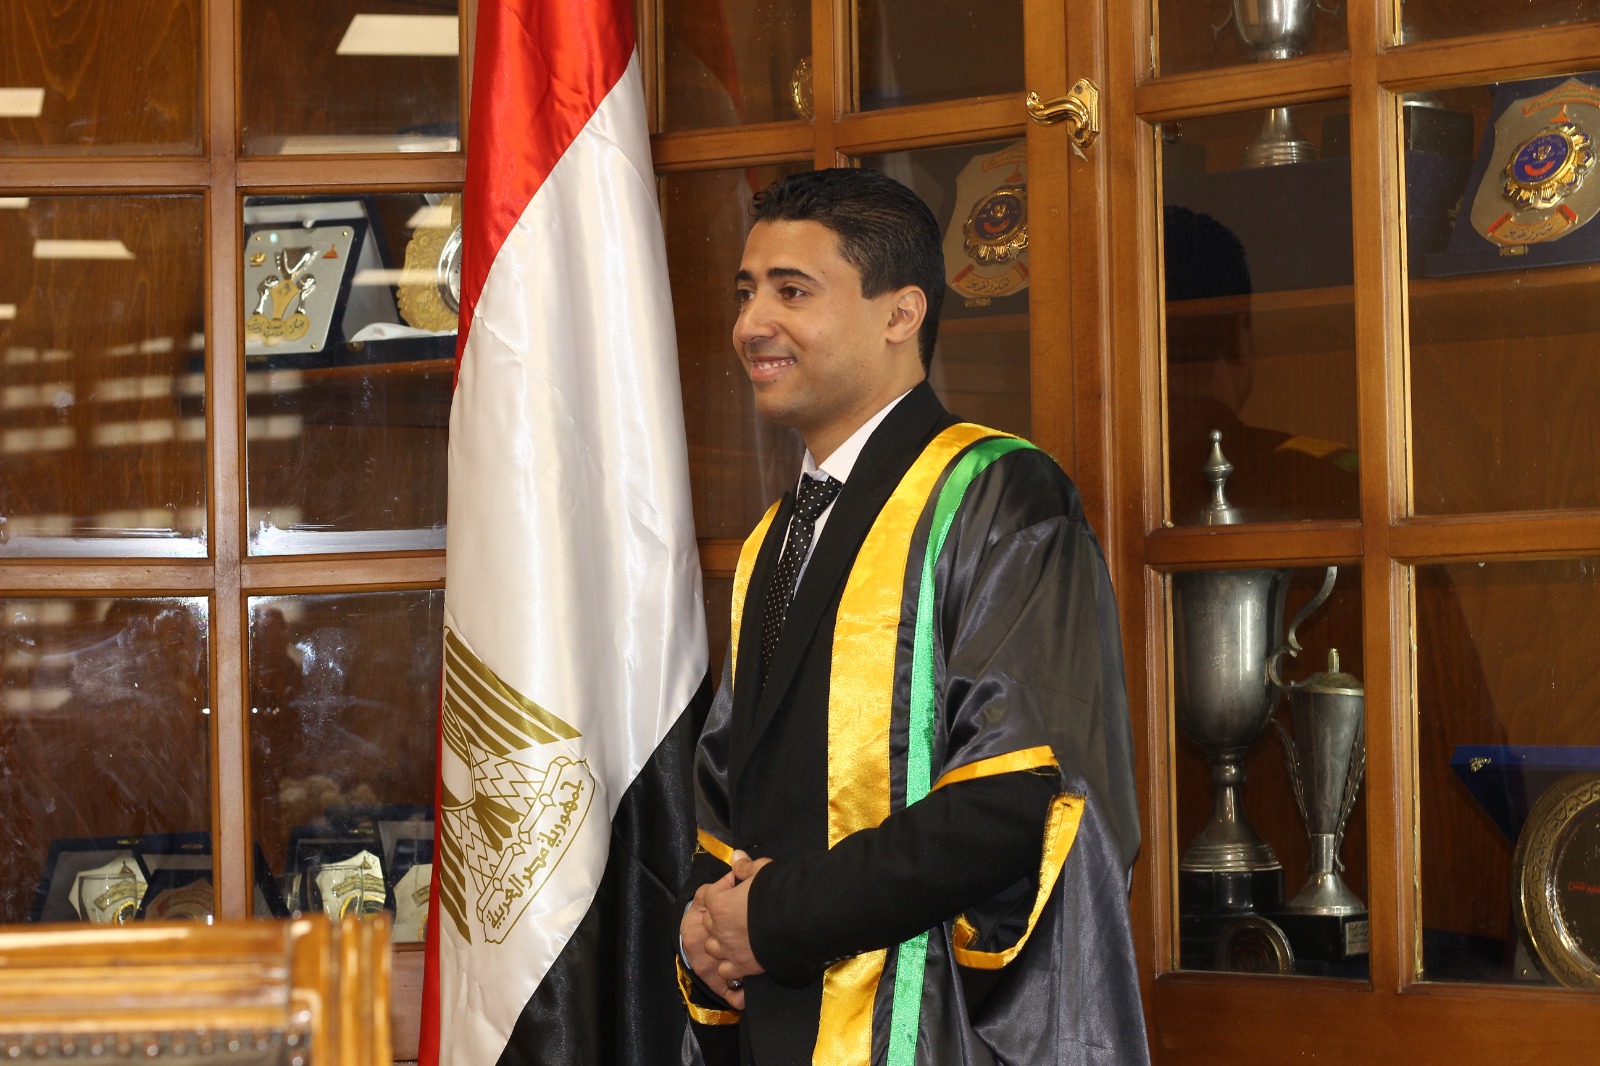 الأستاذ الدكتور أنس عطية الفقي يهنيء الباحث محمد مجدي لبيب لحصوله على درجة الدكتوراه